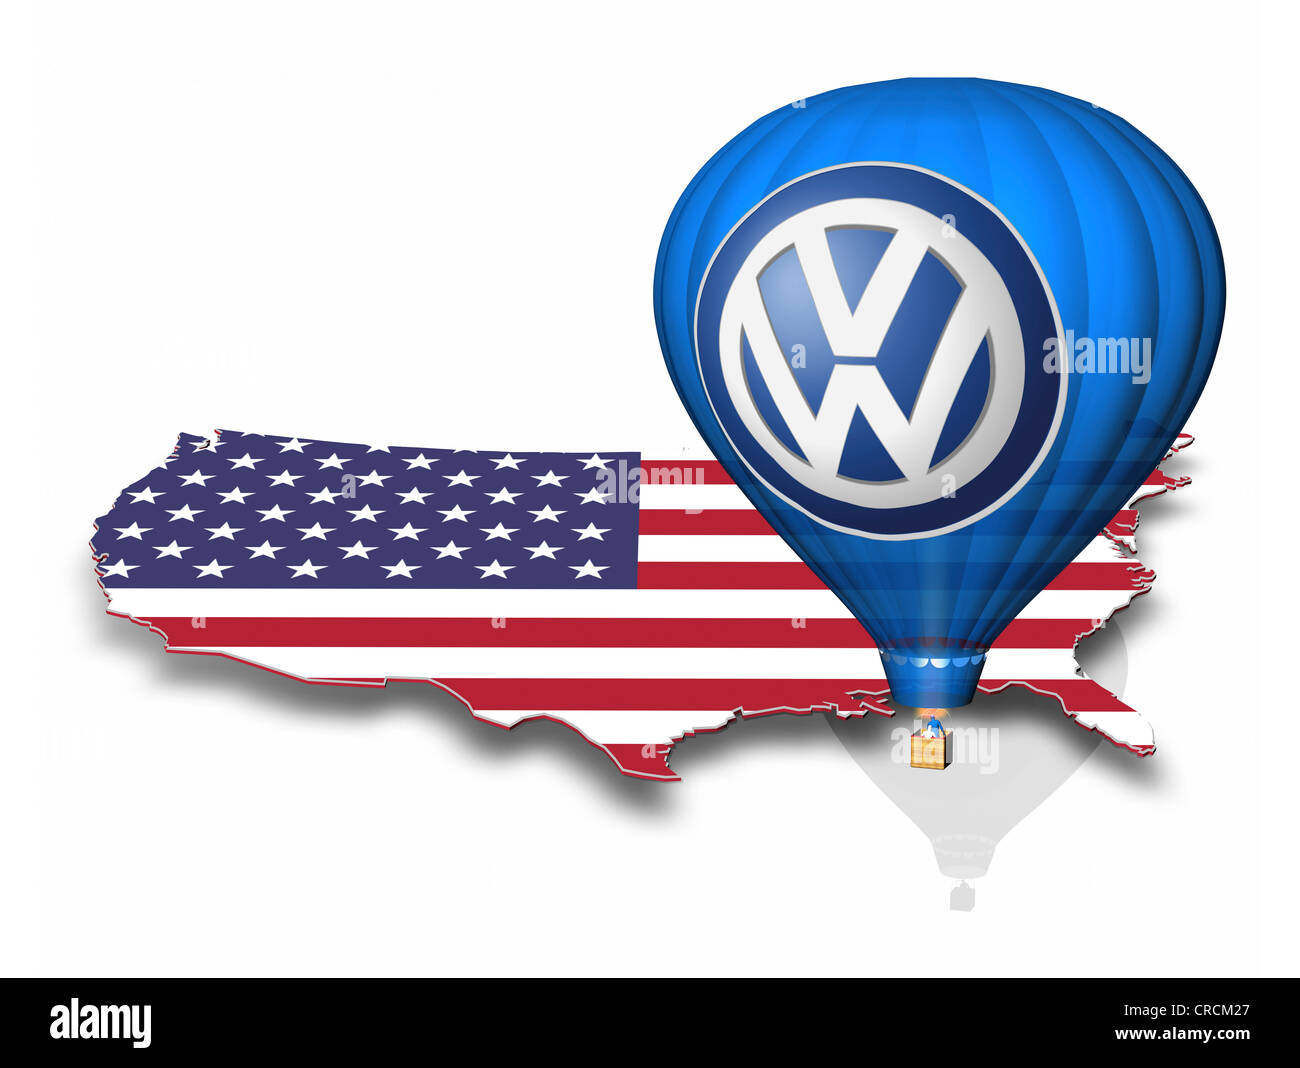 Aperçu des États-Unis avec le drapeau national, hot air balloon avec le logo de Volkswagen Banque D'Images